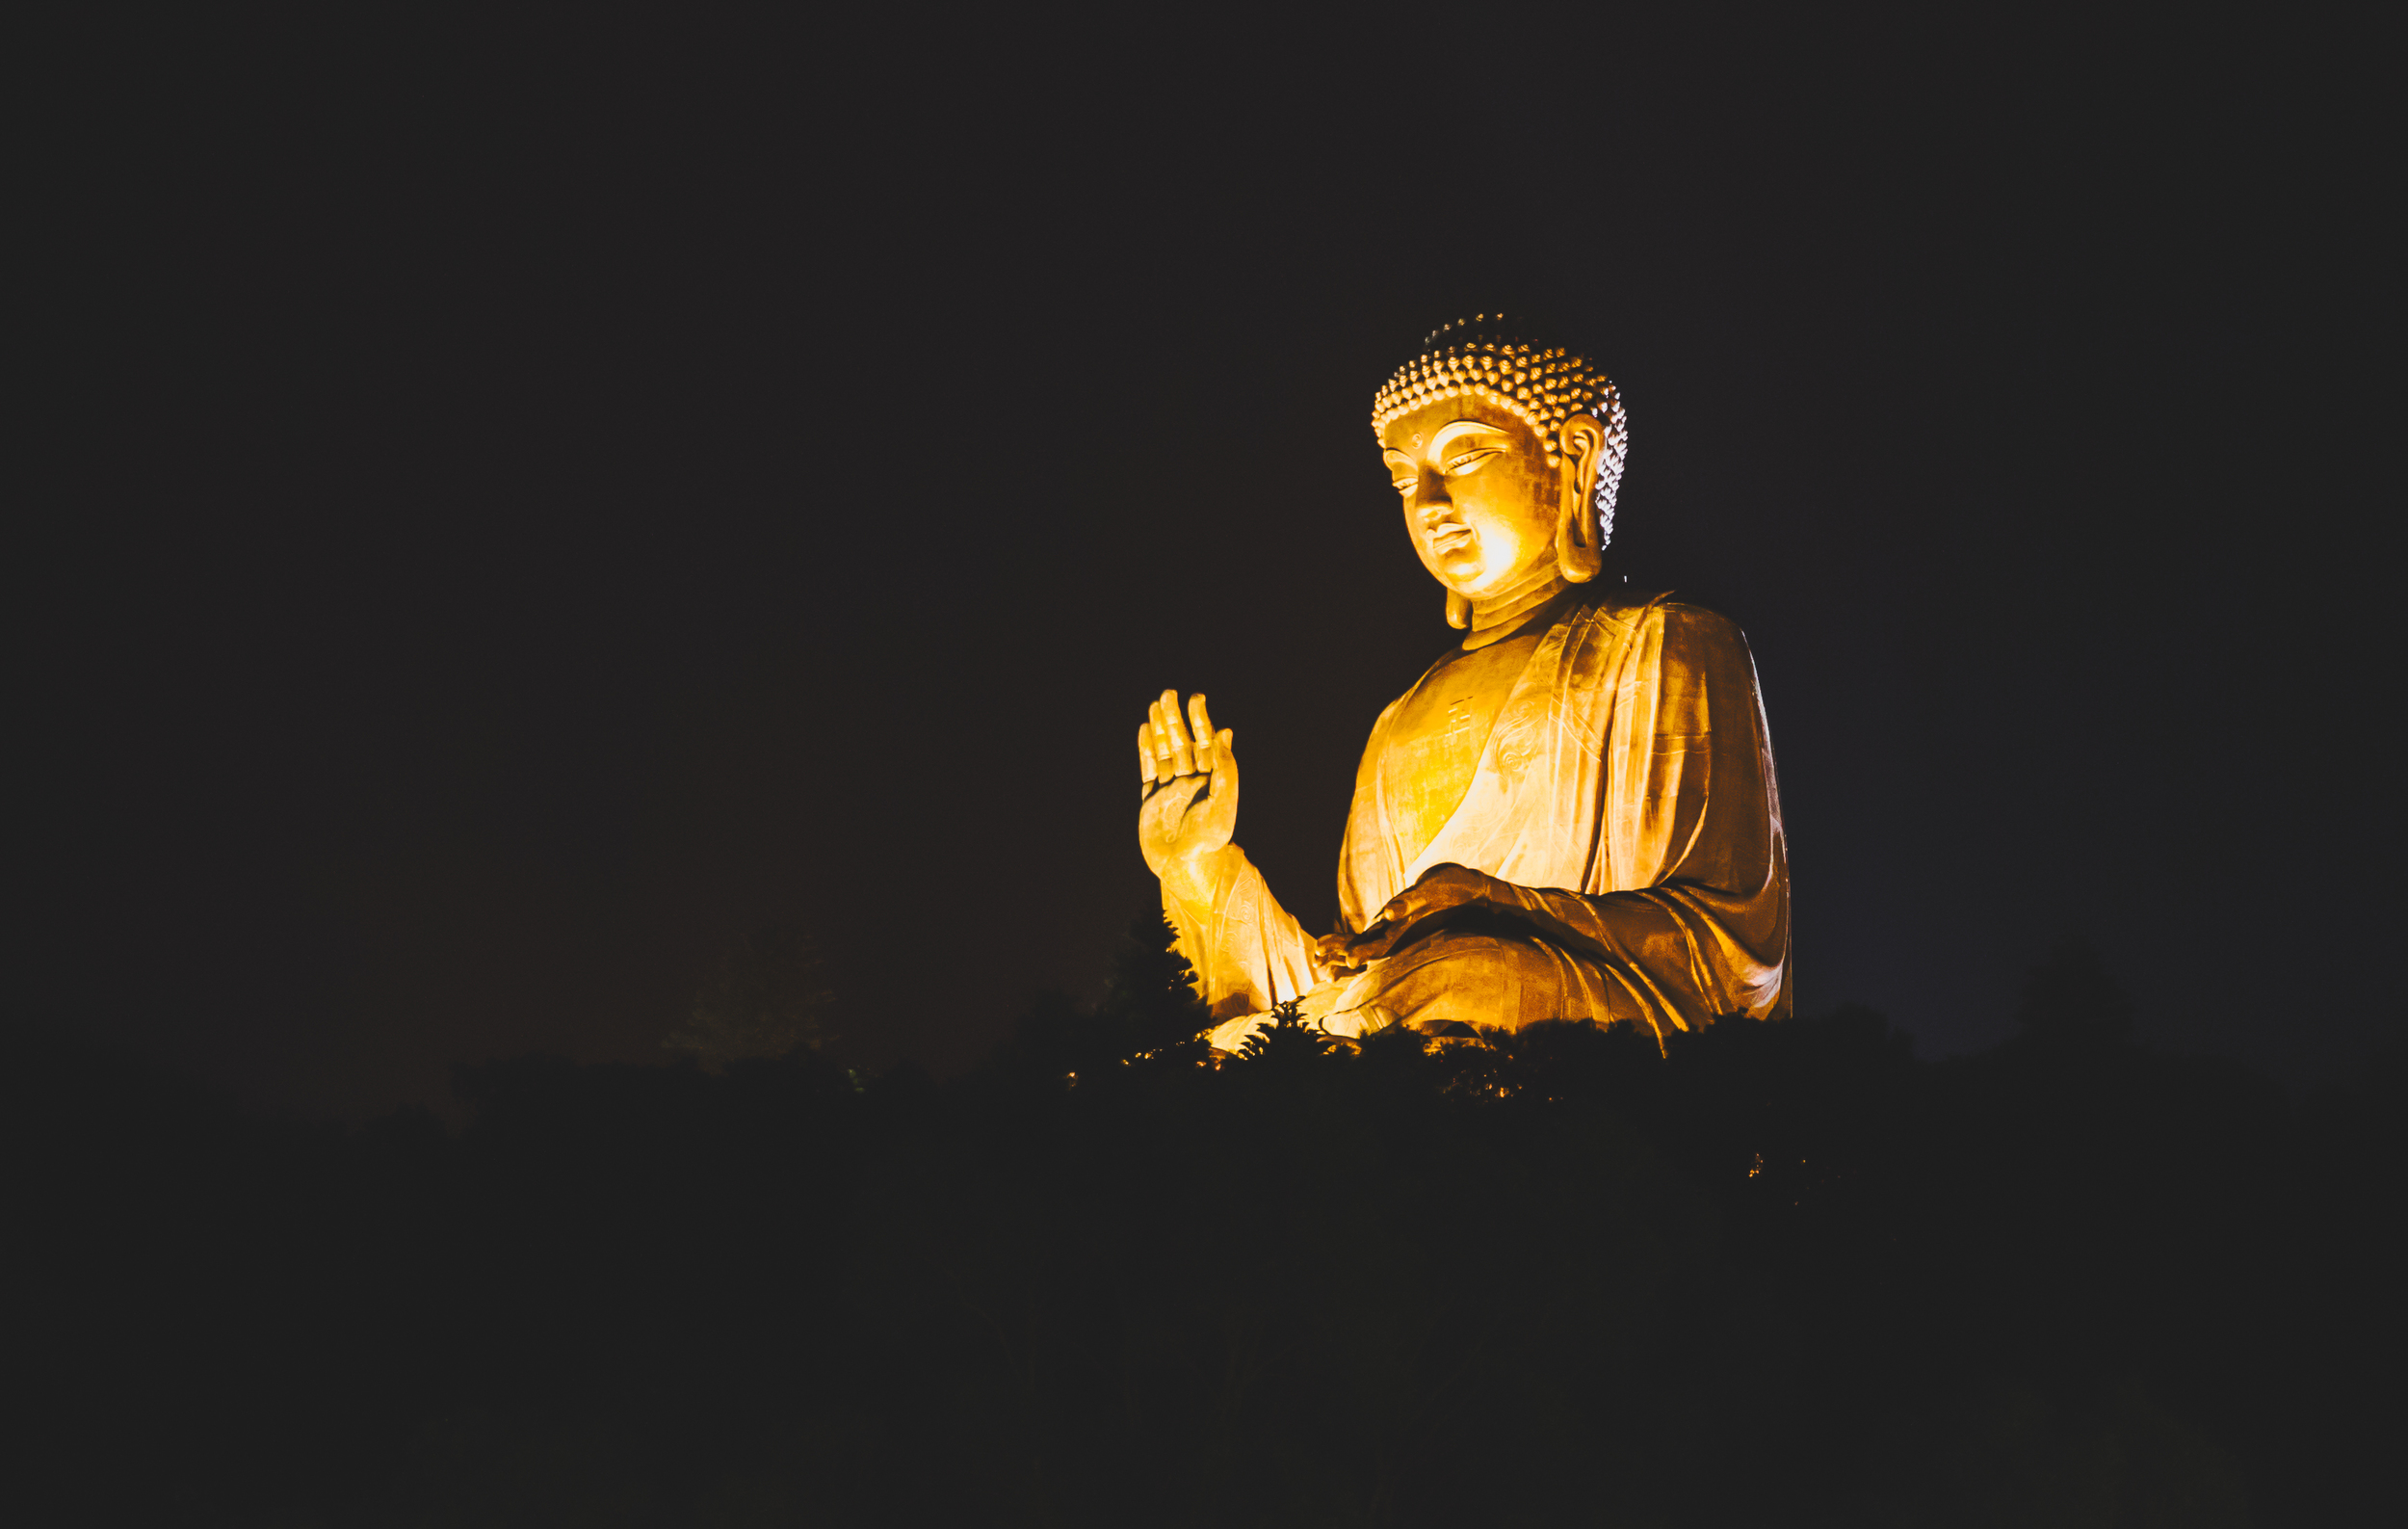 Big Buddha at nightfall